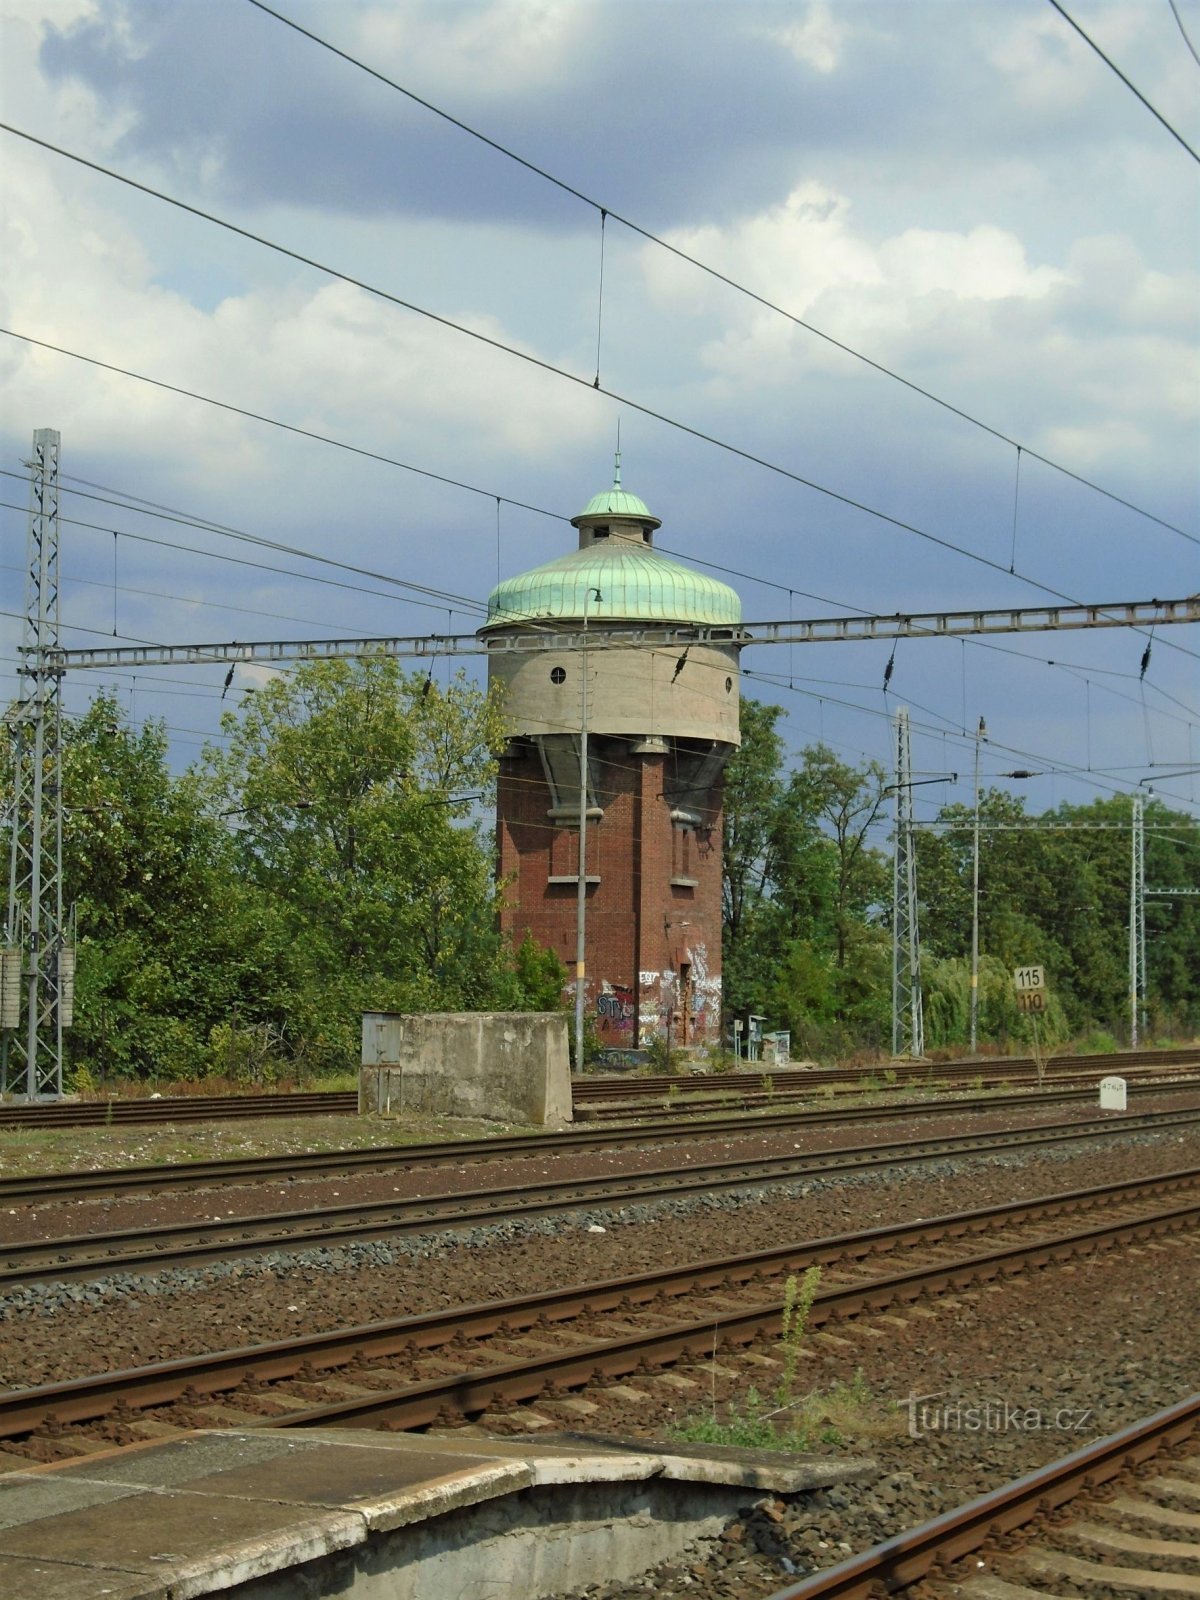 Zbiornik wieżowy stacji (Roudnice nad Labem, 23.7.2018)